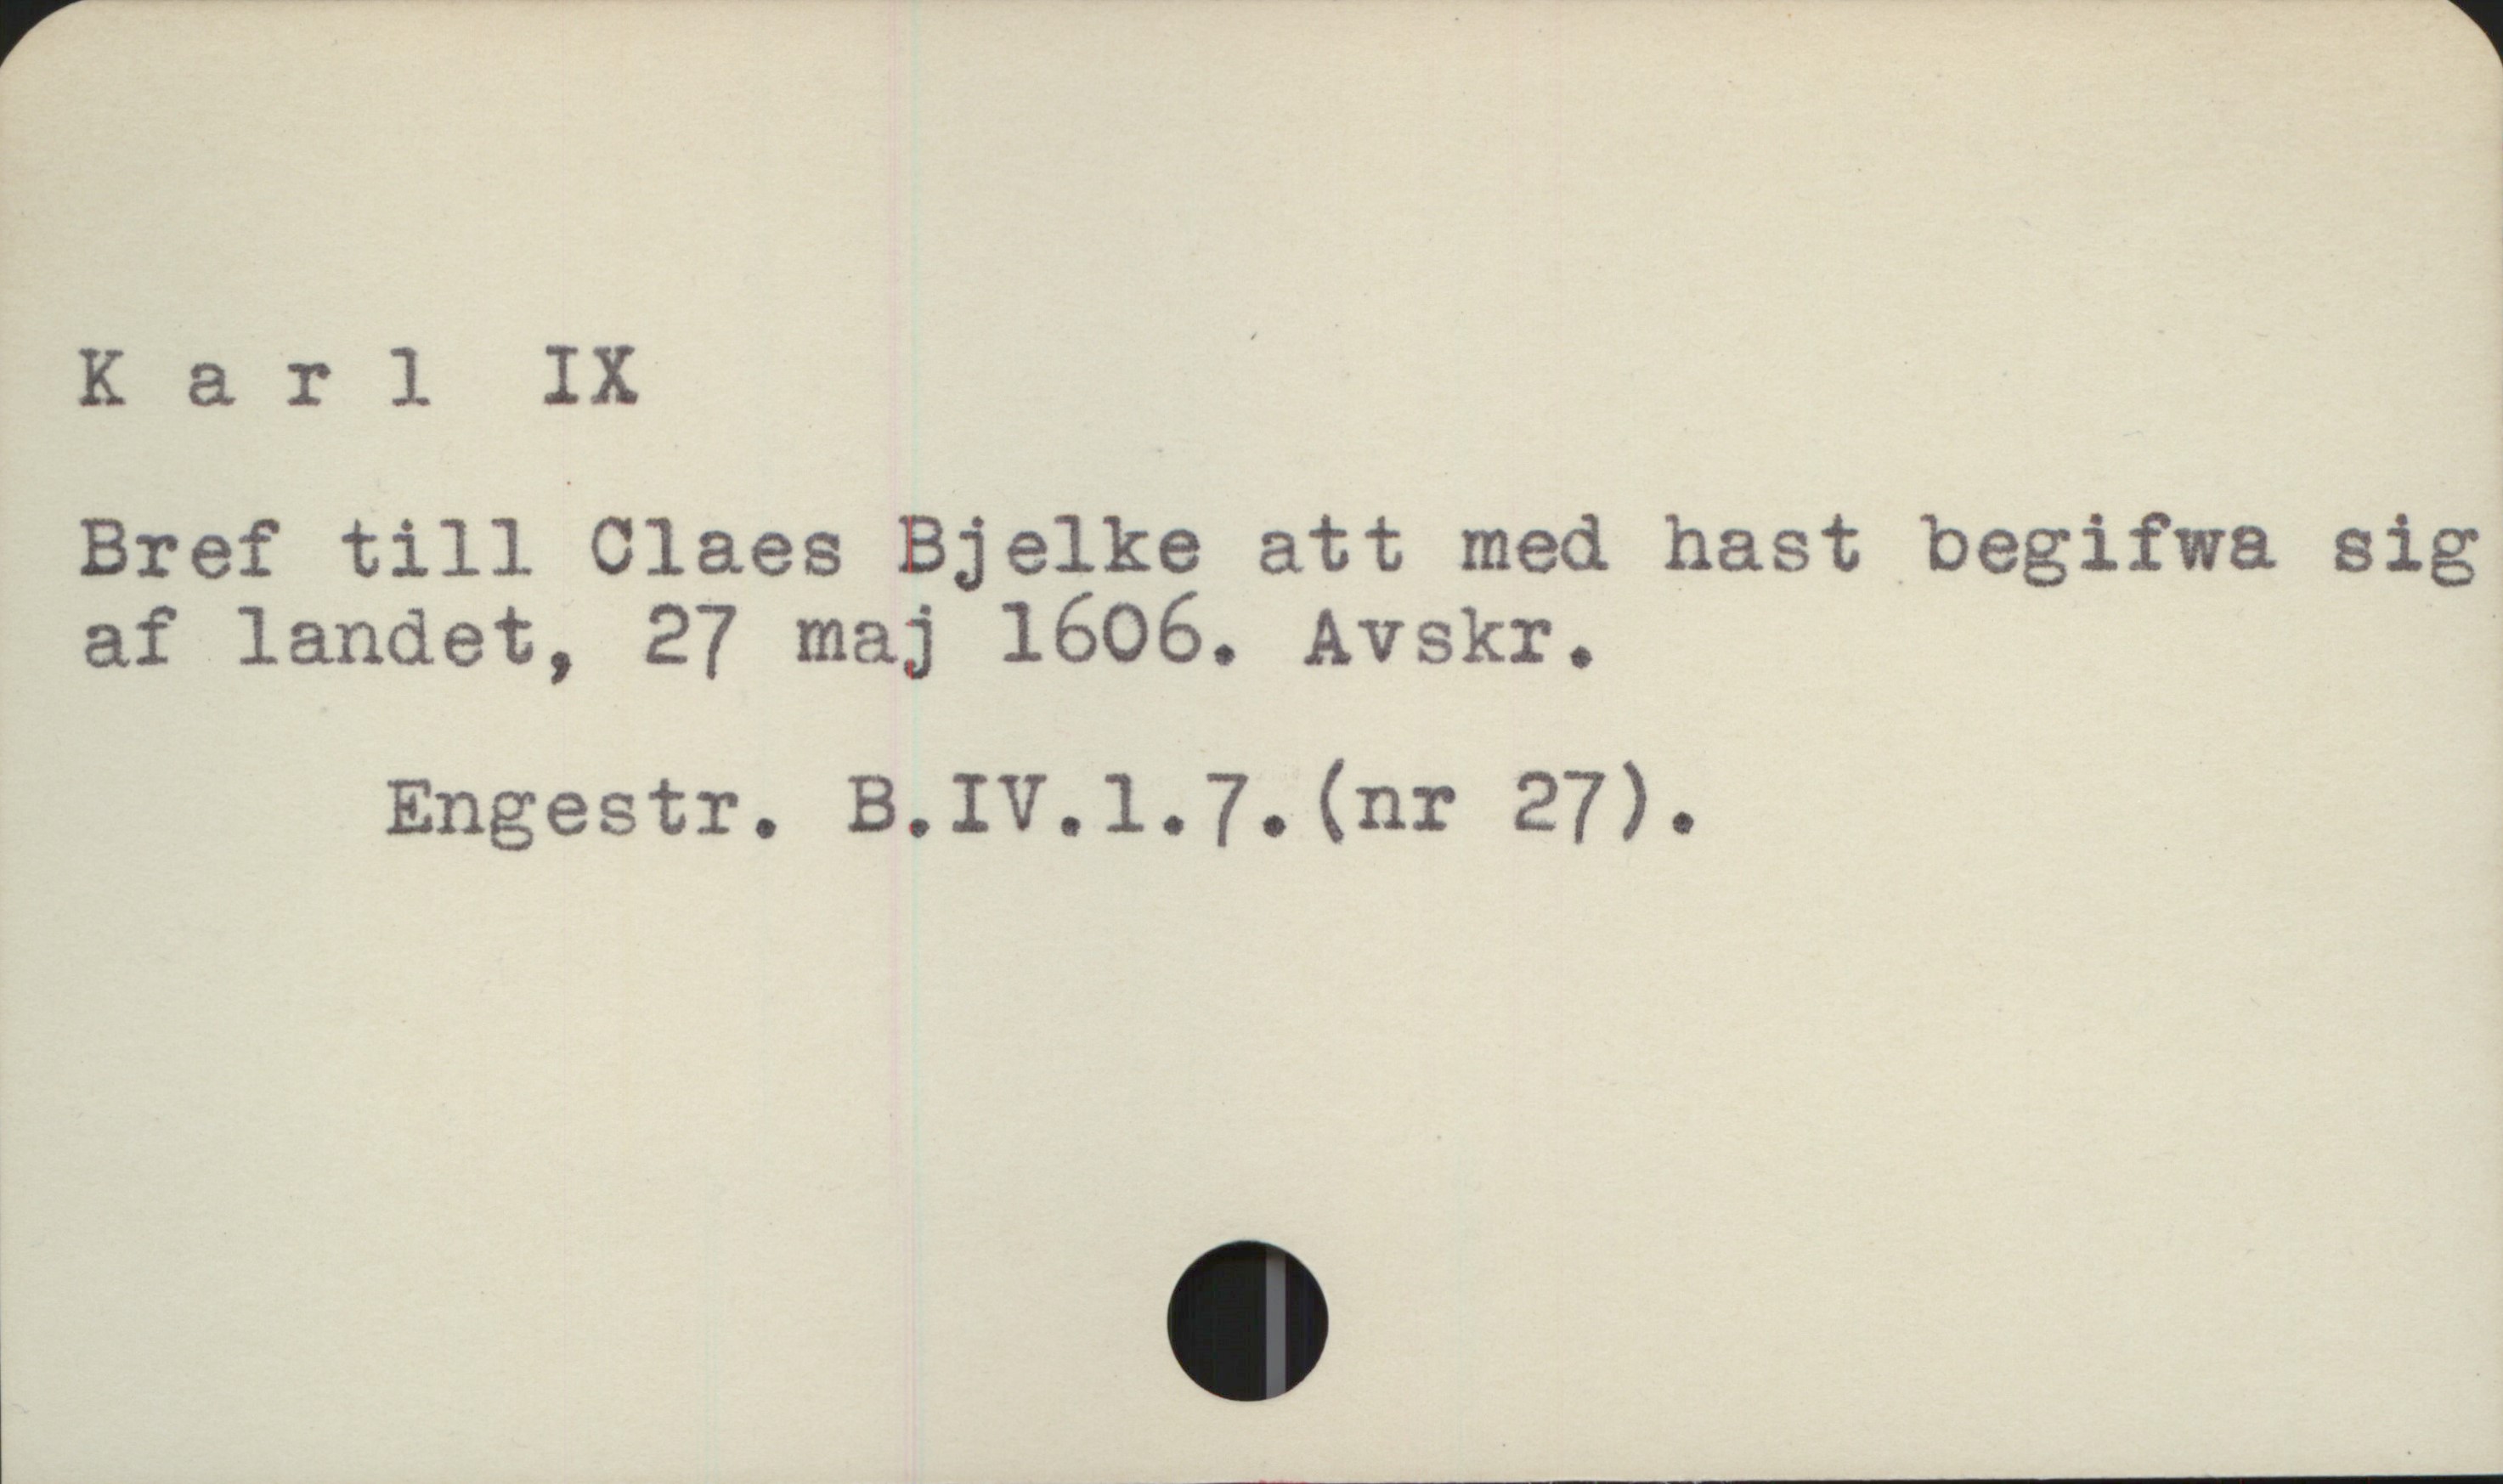  K a r ] IX
Bref till Claes Bjelke att med hast begifwa sig
af landet, 27 maj 1606. Avskr.

Engestr. B.IV.1.73. (nr 27).

